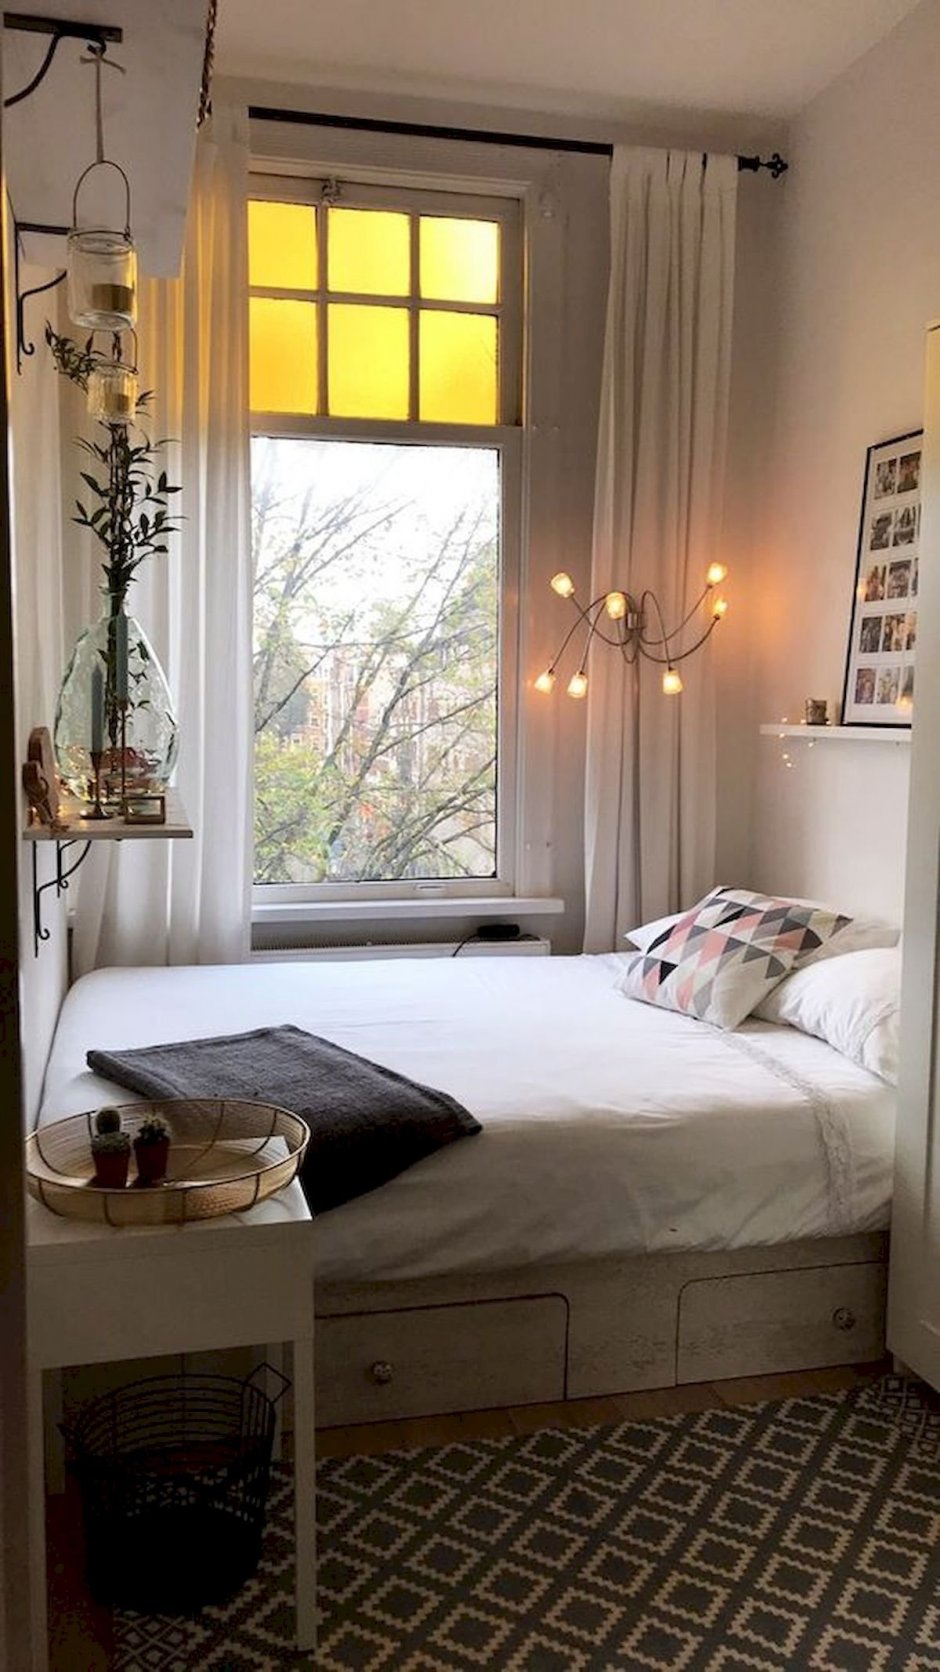 Кровать у окна в маленькой комнате